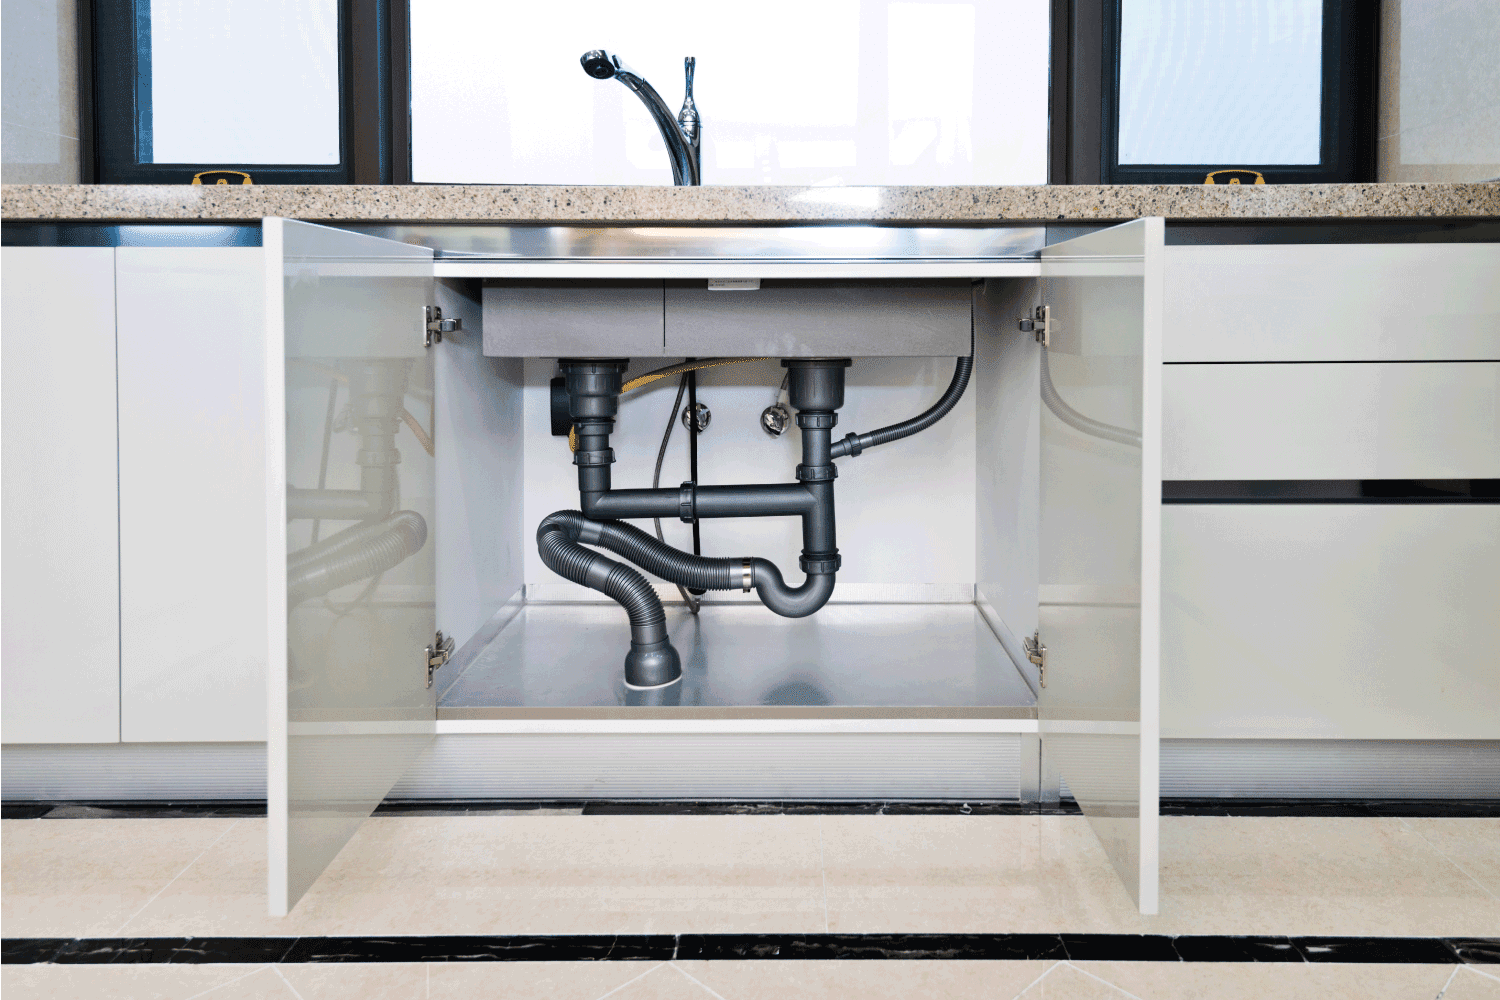 Water pipe under kitchen sink, open cabinet doors